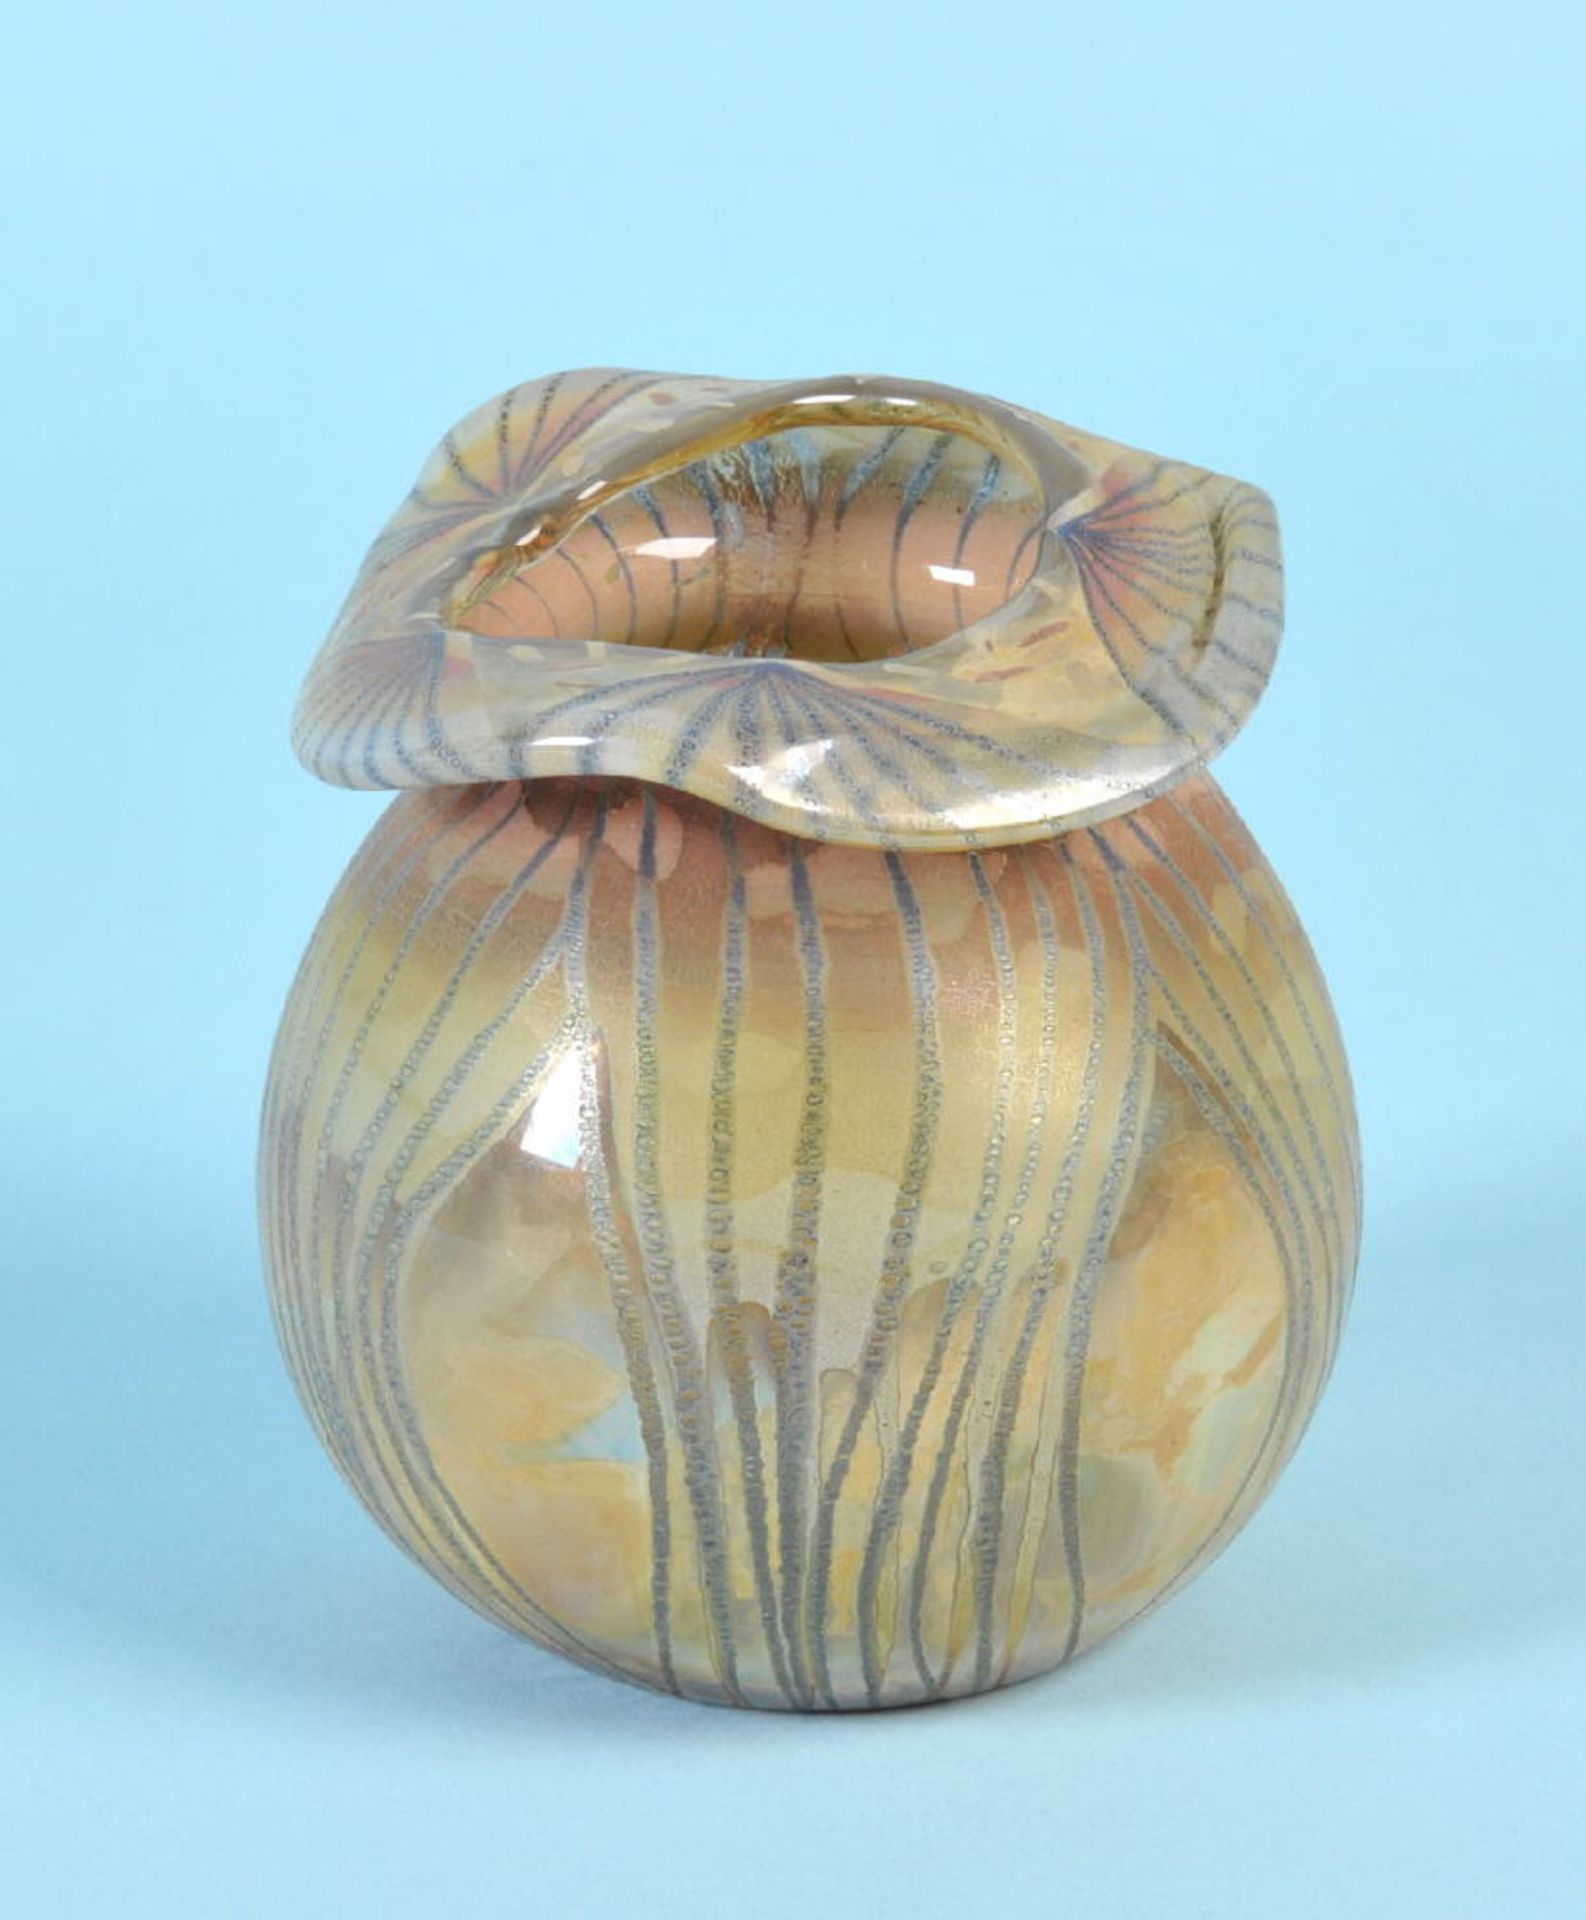 Vase "Vera Walther"farbloses Glas, mehrfarbiger Überfang mit Liniendekor, bauchige Form, gewellter